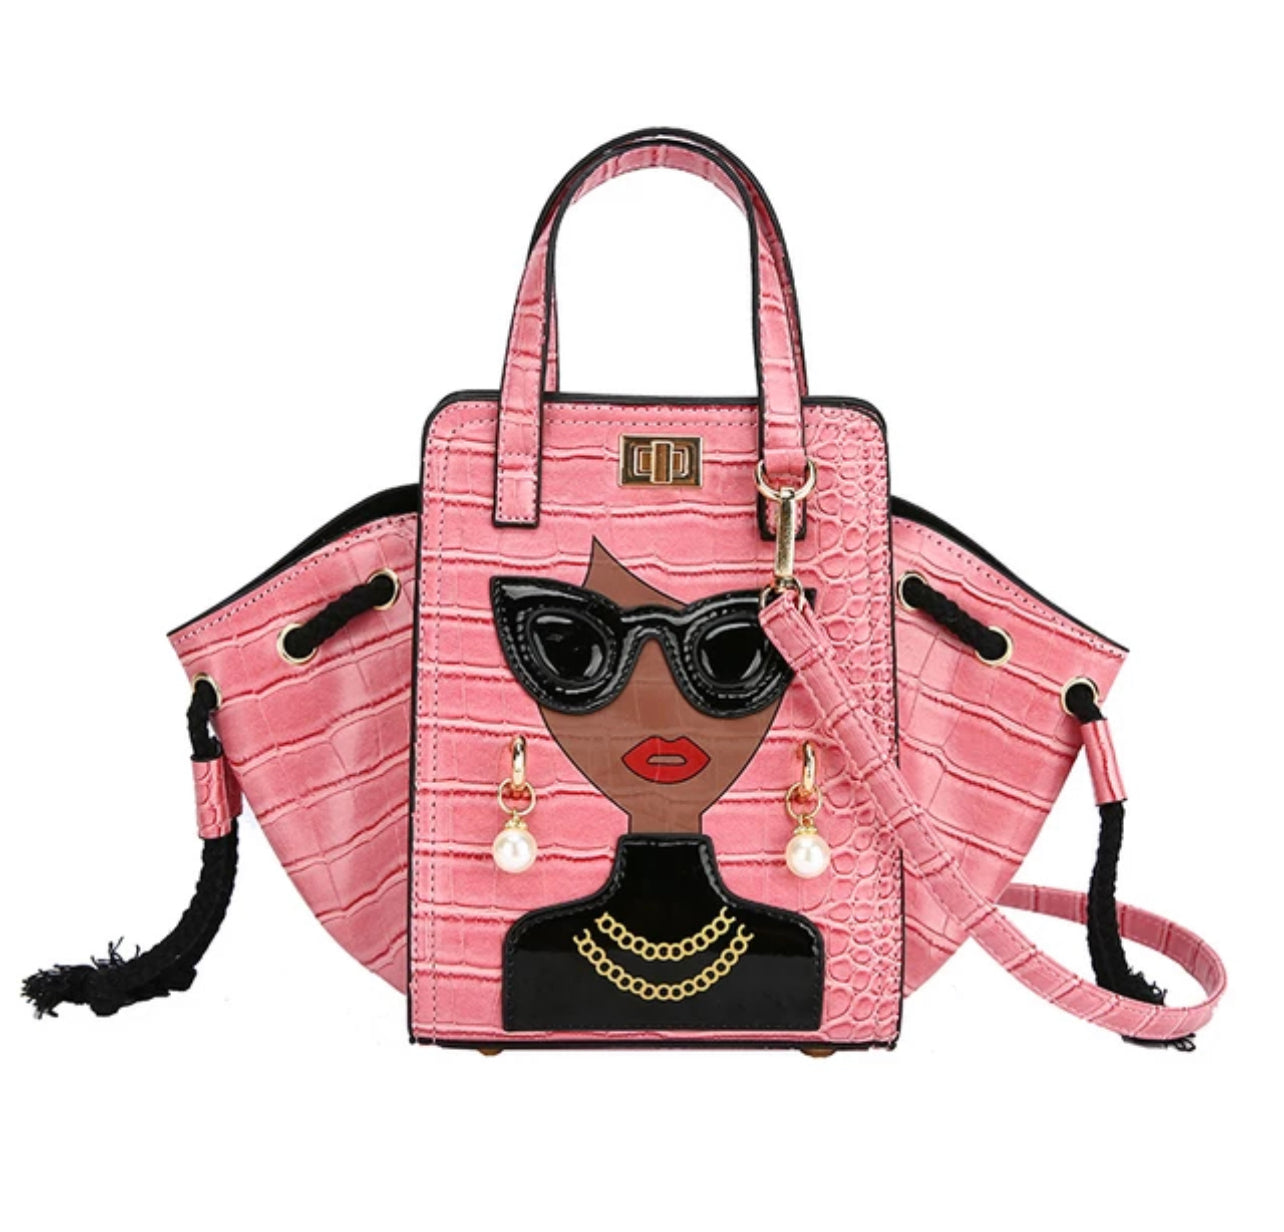 Shop Barbie Bags online